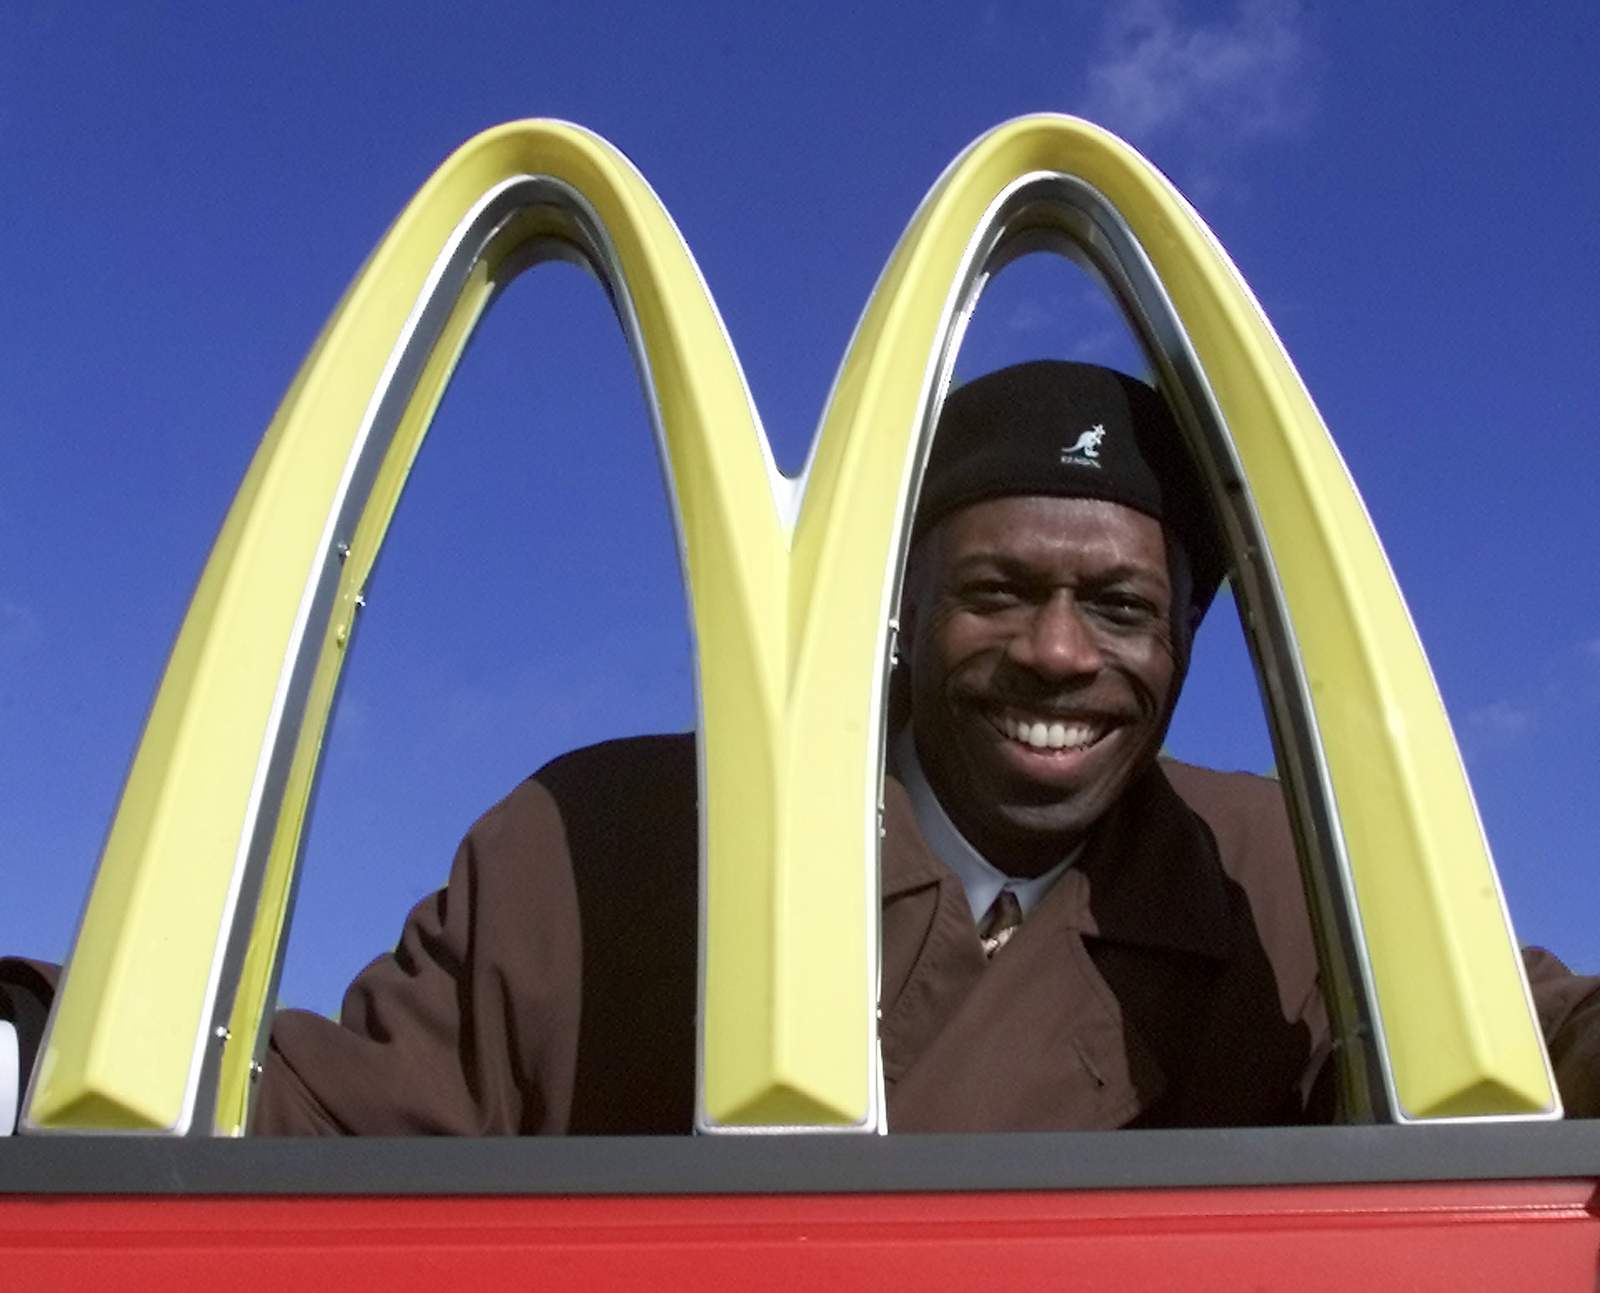 Black franchise owner sues McDonald's, cites persistent bias